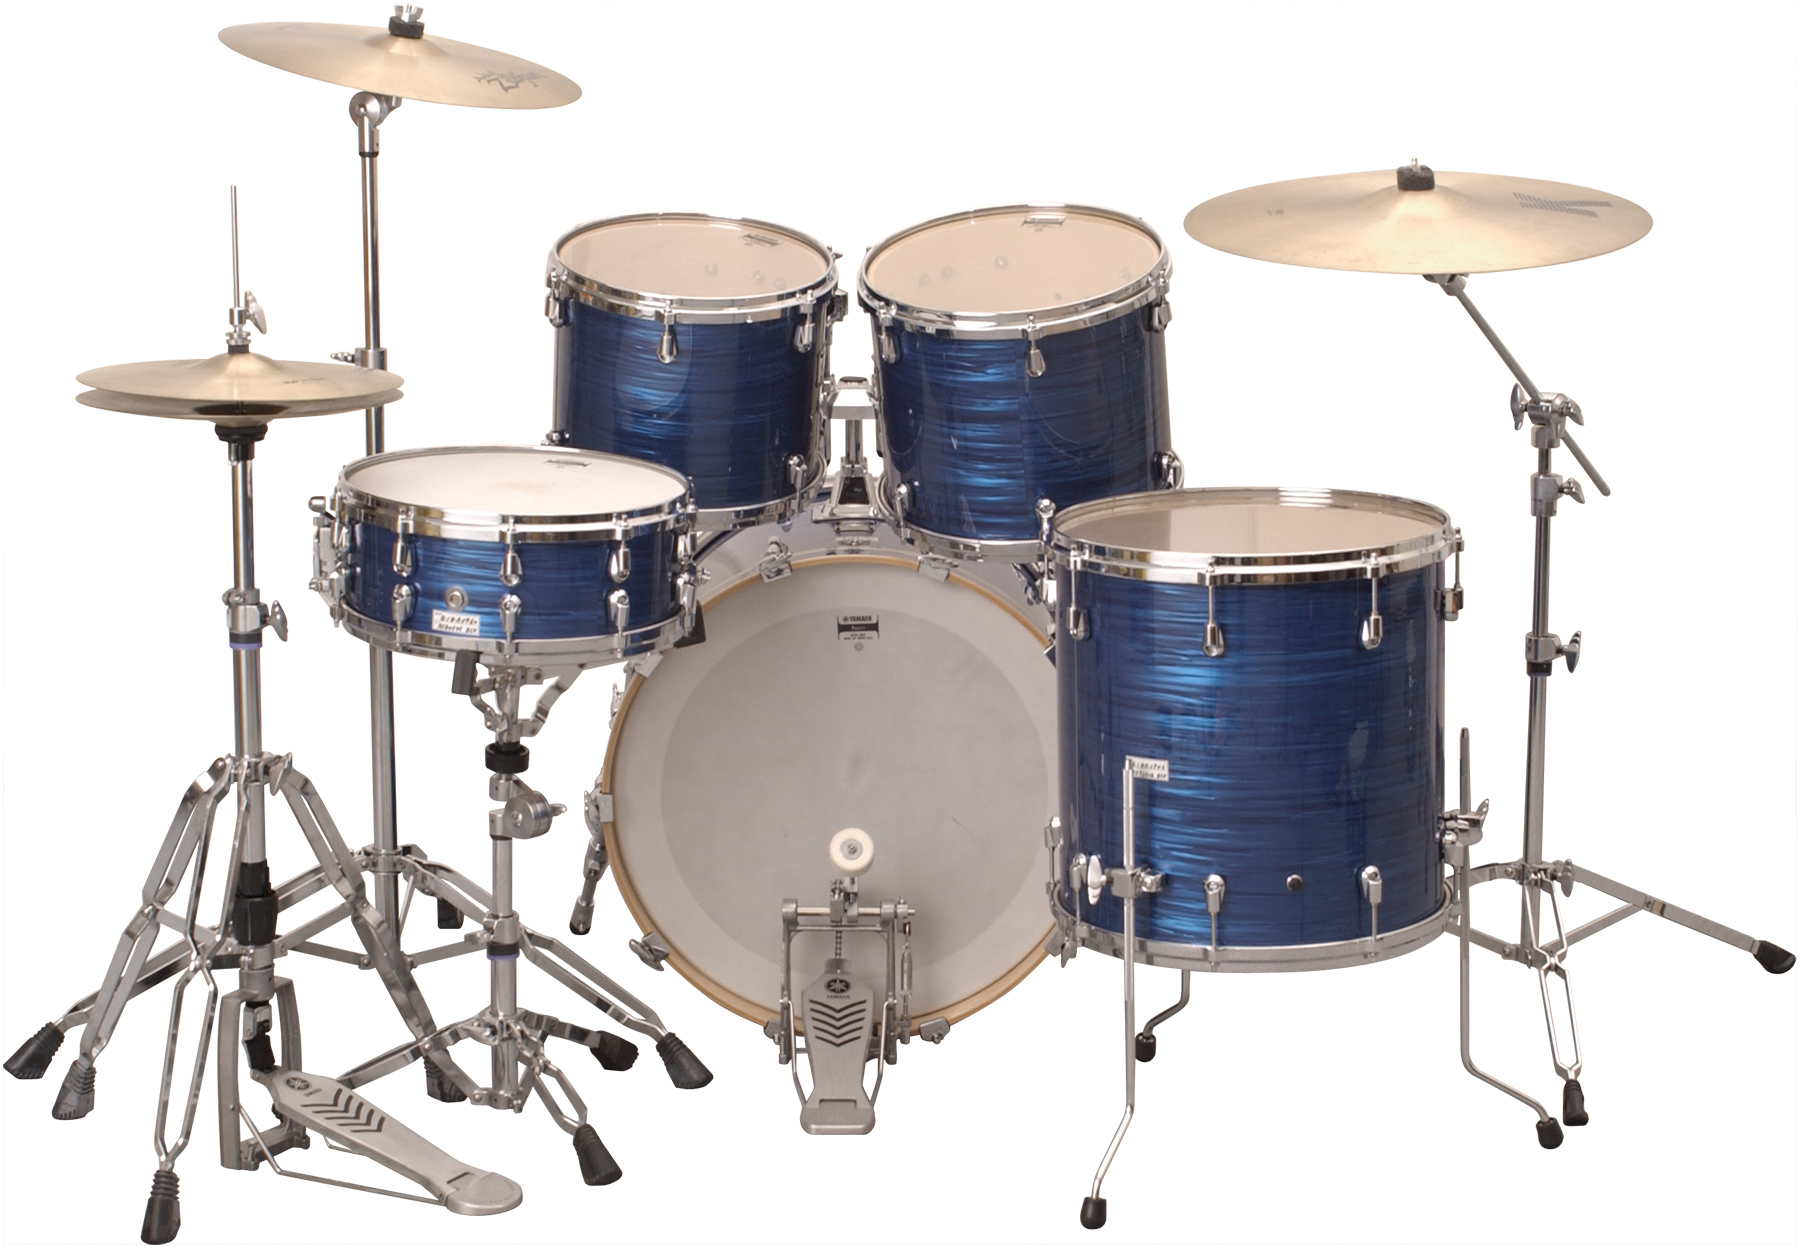 fl studio drum kits